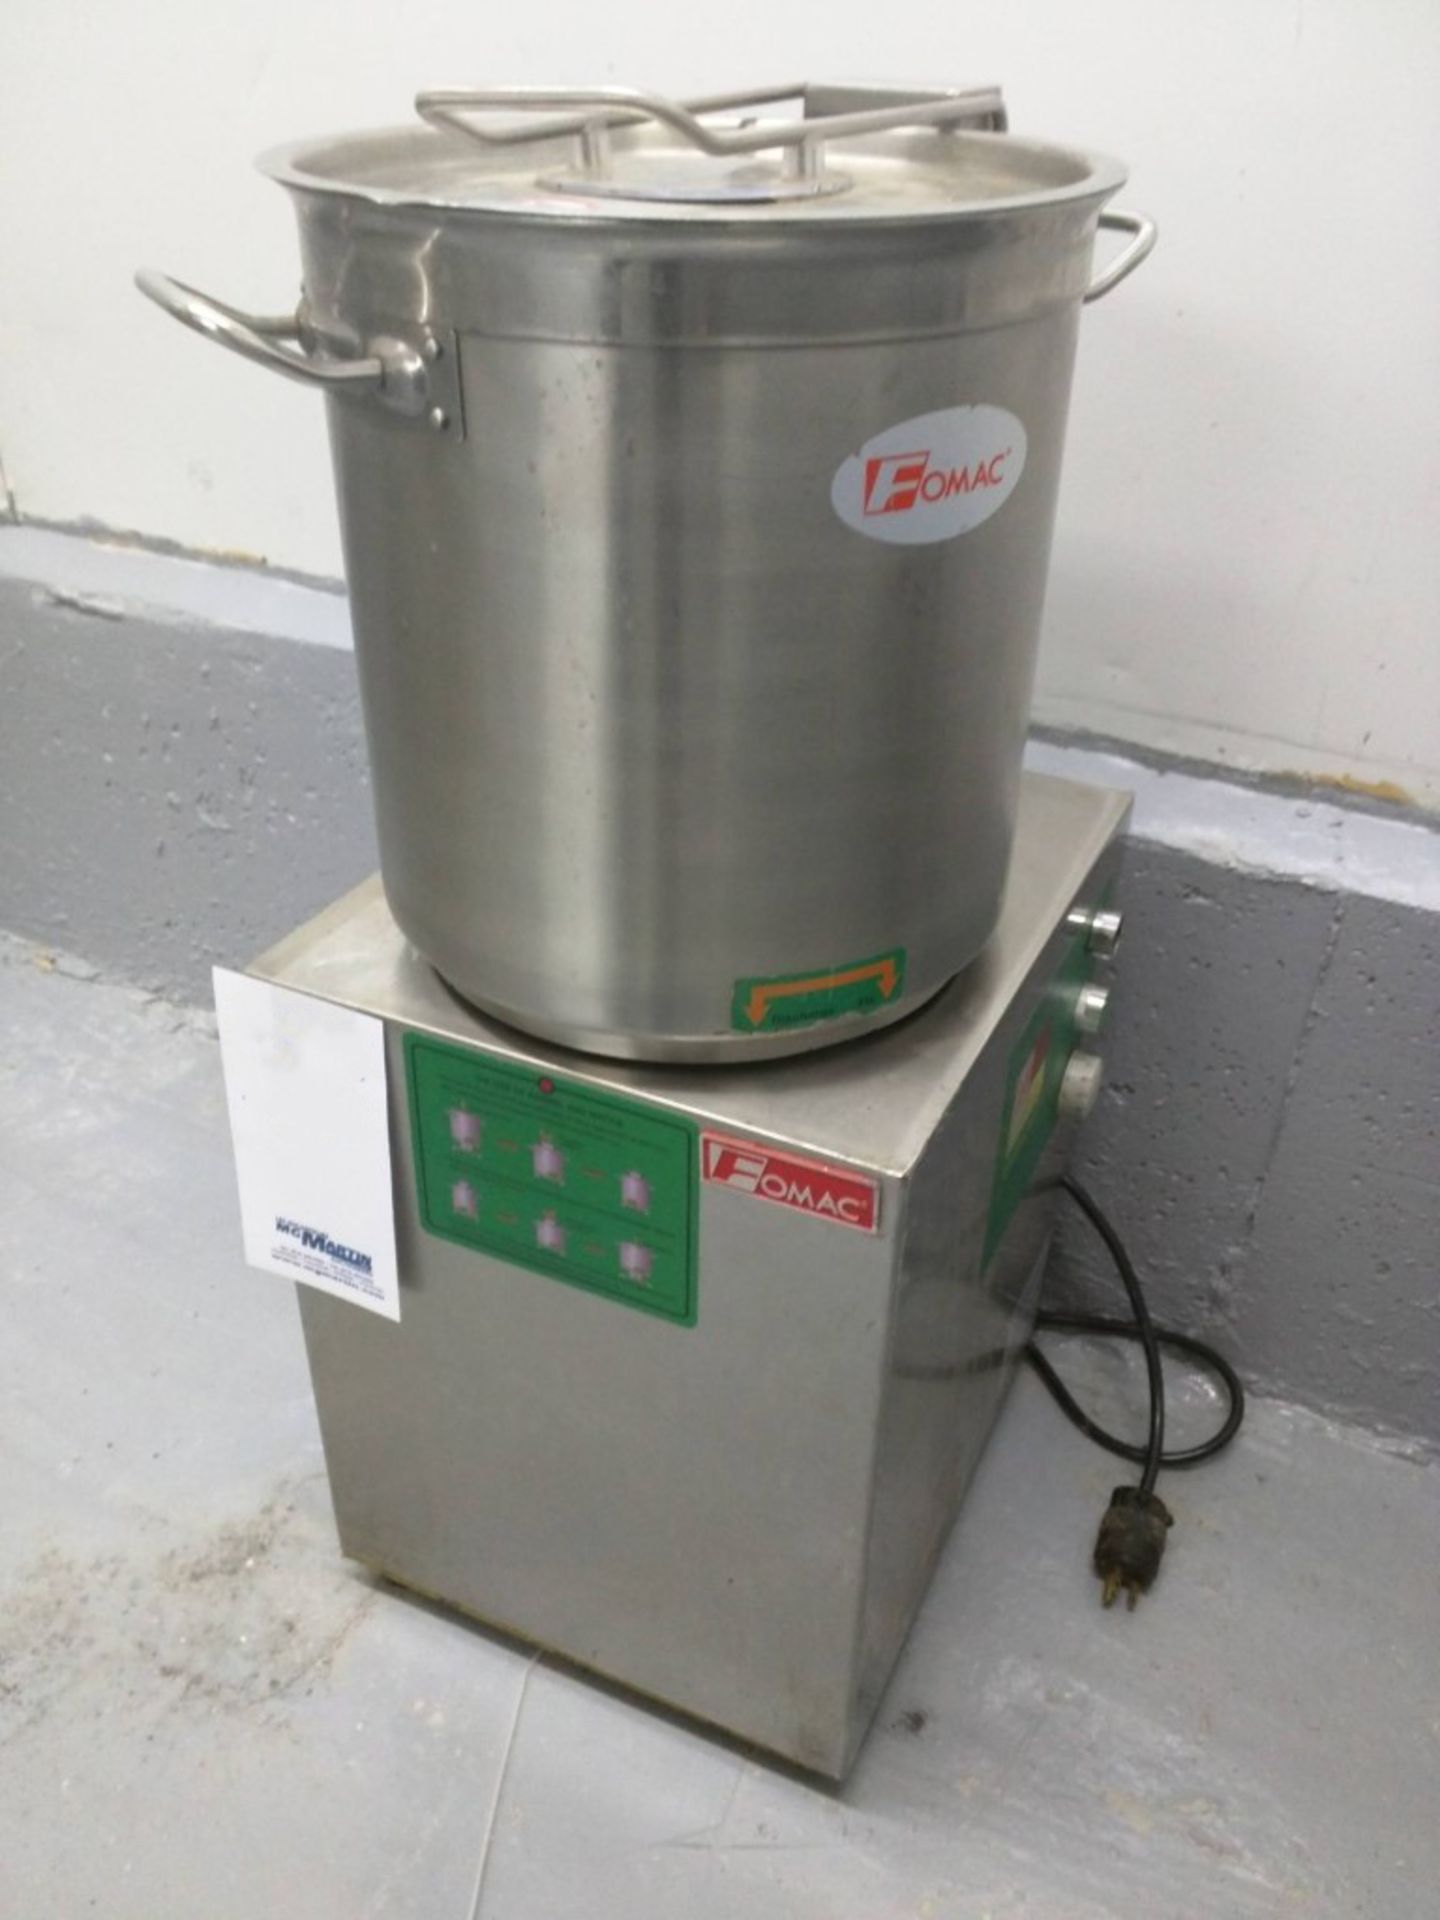 2016 Fomac 13 Liter Industrial Food Processor, Model 23Q, S/N 2016022635-L, 3,000 RPM Blade Speed,